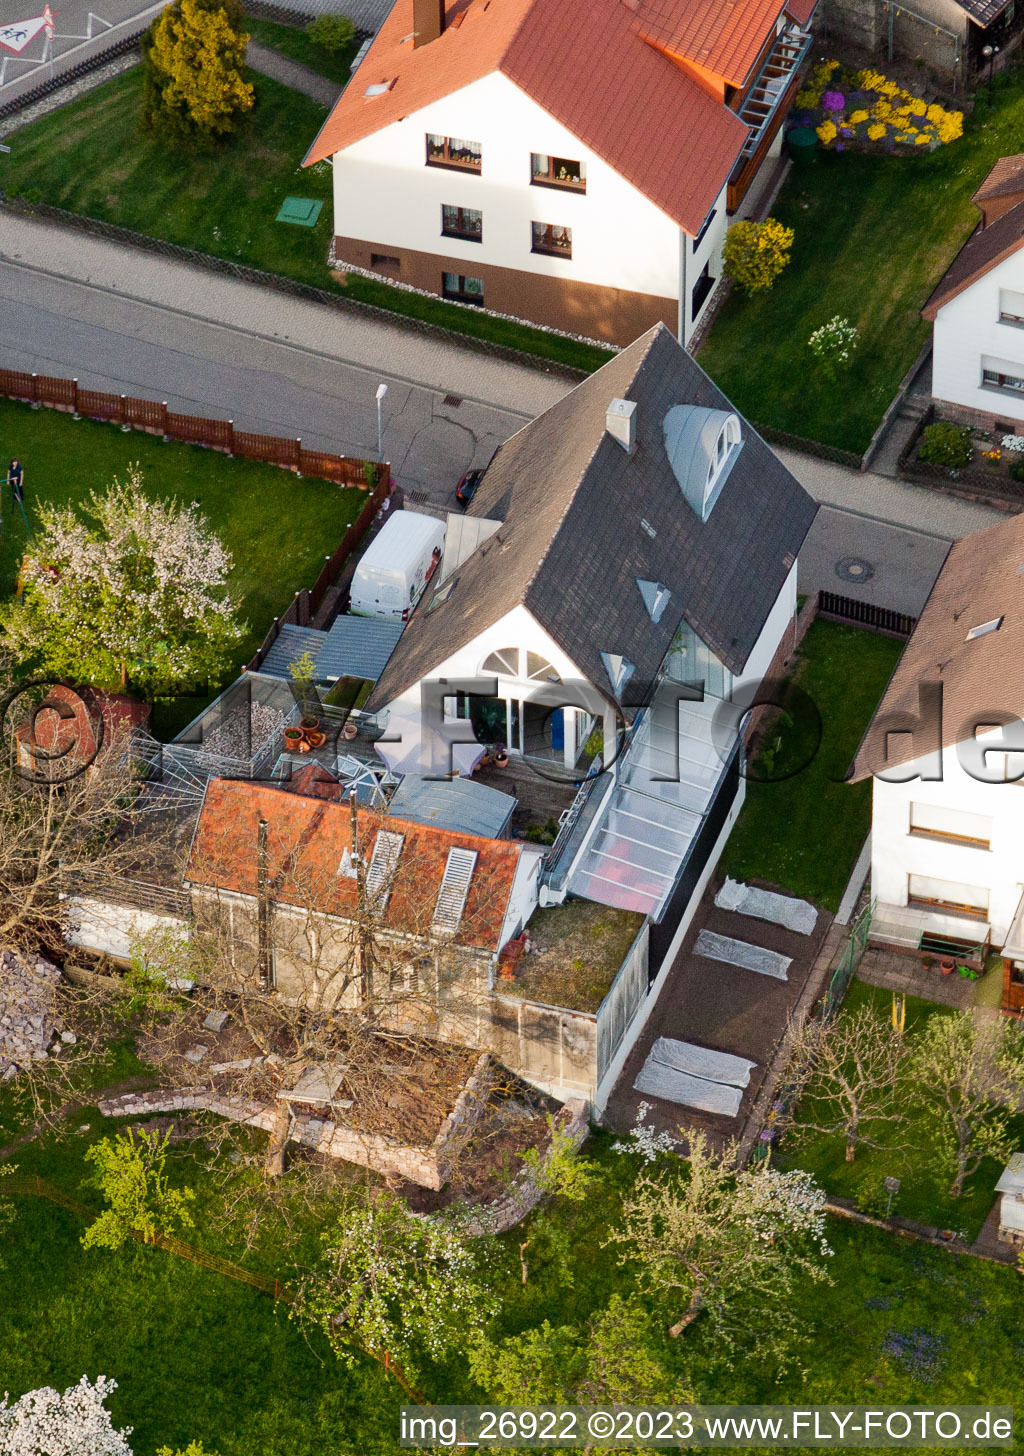 Ortsteil Völkersbach in Malsch im Bundesland Baden-Württemberg, Deutschland aus der Drohnenperspektive